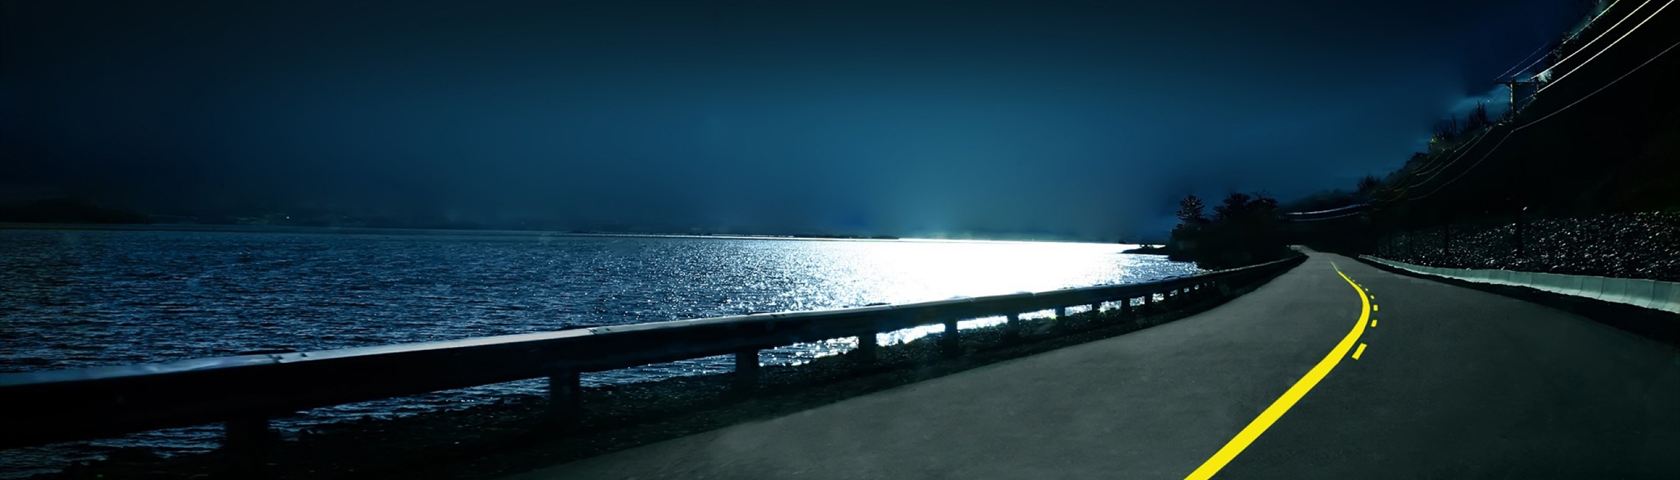 Coastal Road at Night